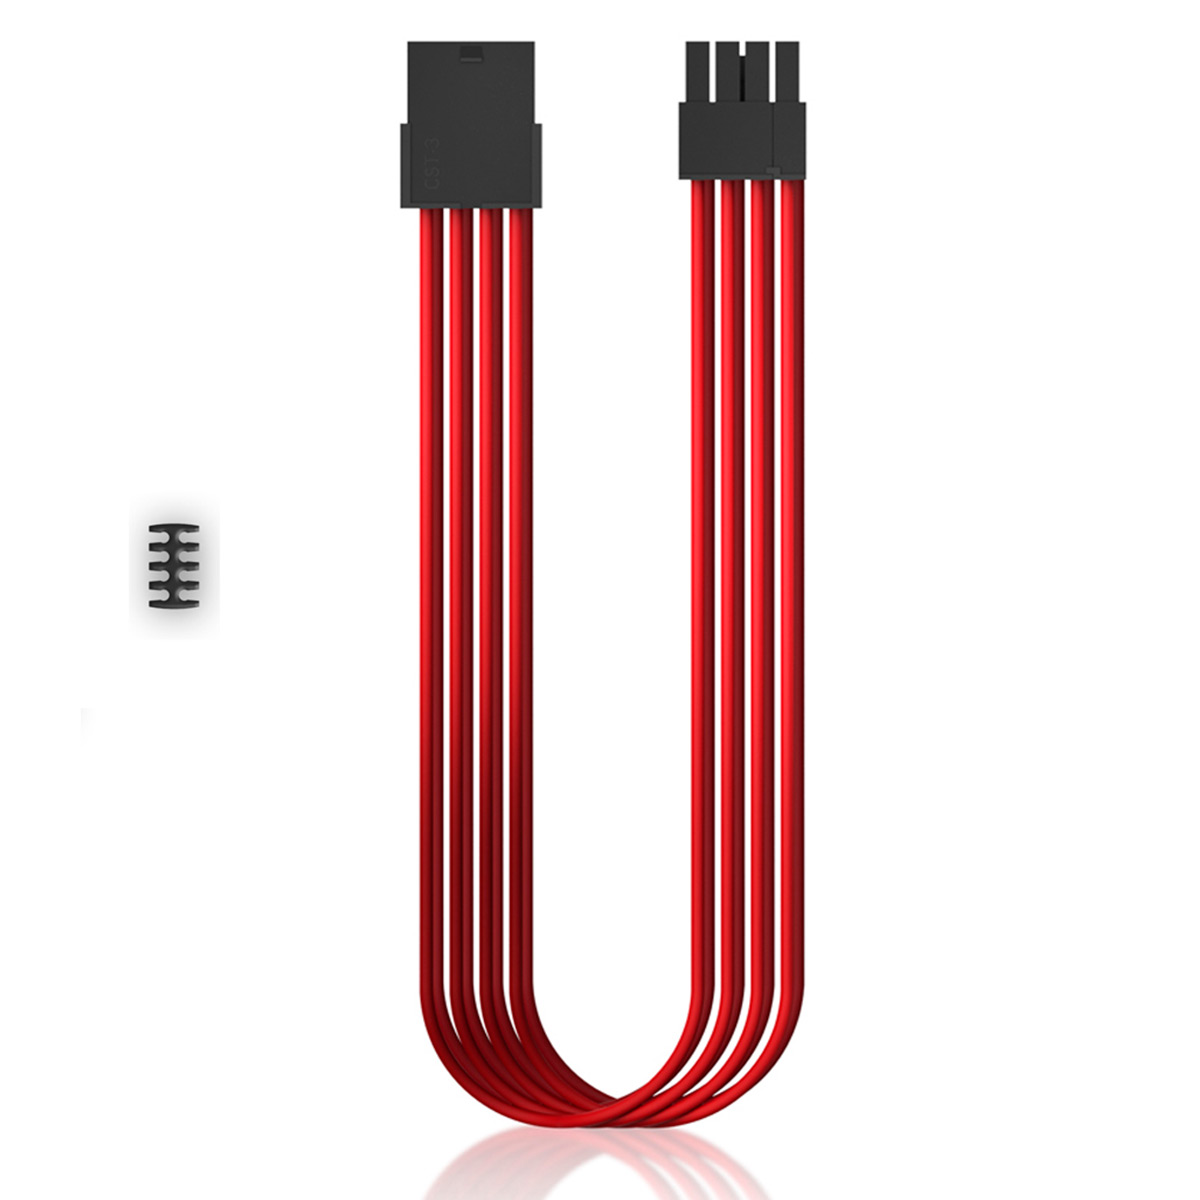 Extensor de Cabo PCI-E - 30cm - Vermelho - Deepcool EC300-PCI-E-RD